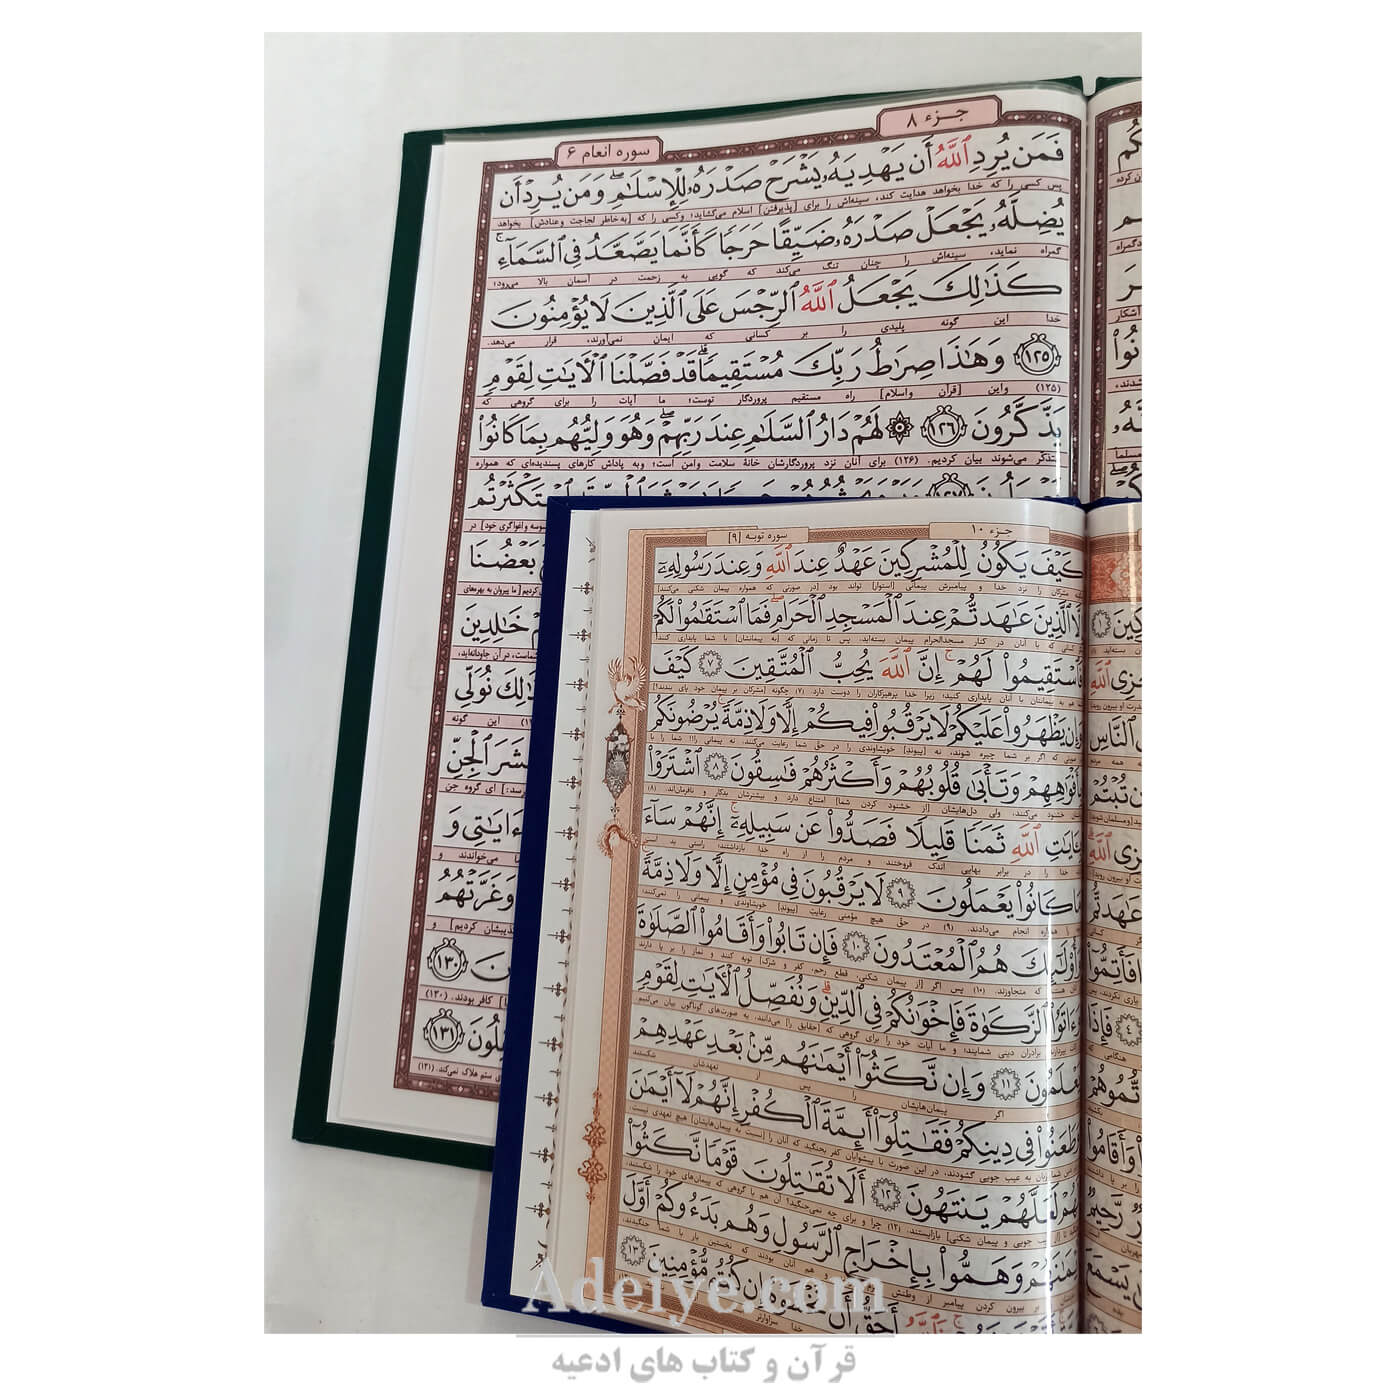 مقایسه خط عثمان طه در قرآن رحلی با قرآن وزیری